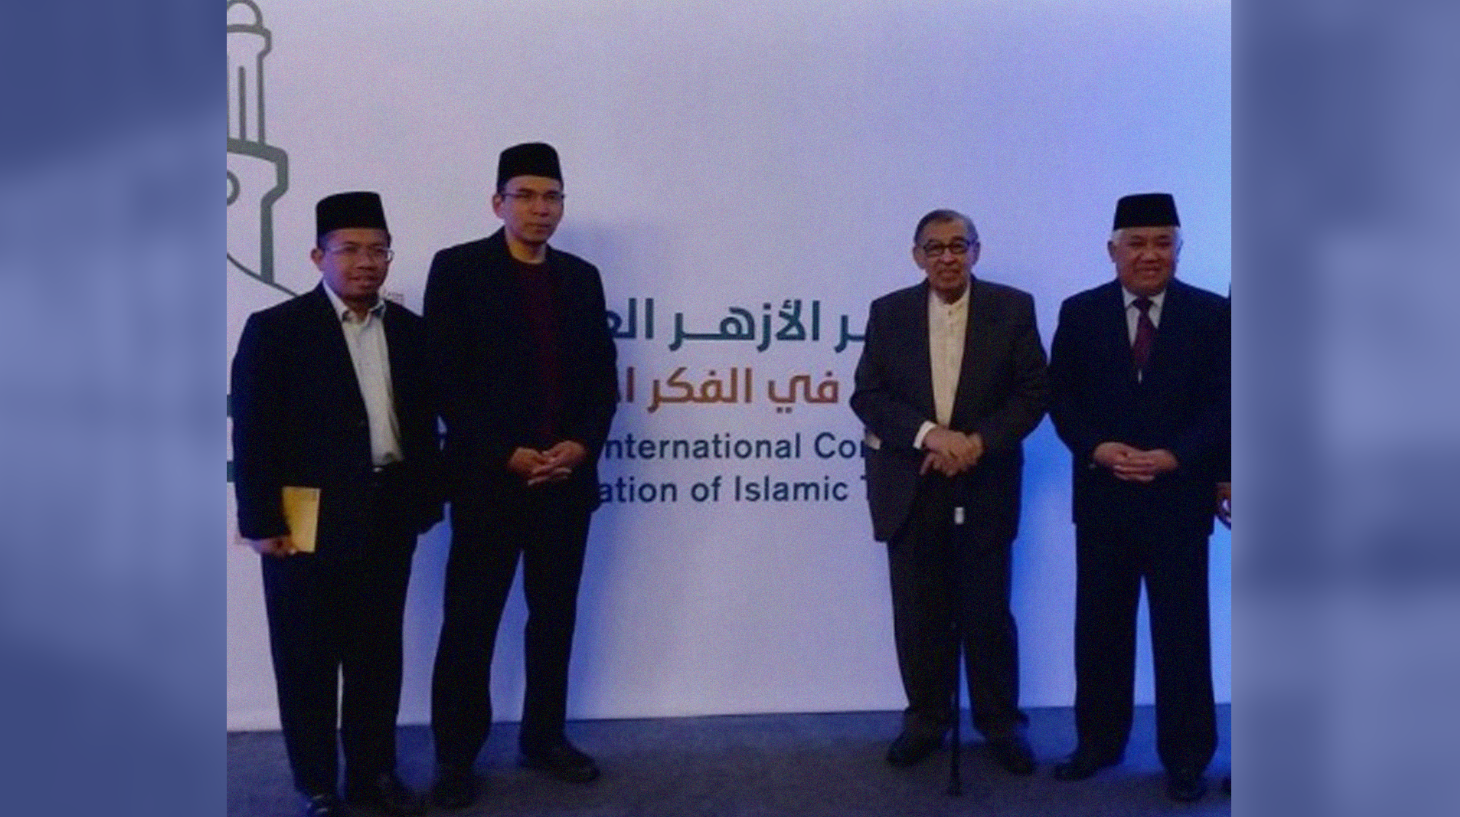 Delegasi Indonesia di Mesir, Prof. Dr. H. Din Syamsuddin, Prof Dr. KH. Quraish Shihab, Dr. TGB. H. Muhammad Zainul Majdi dan Dr. H. Muhklis Hanafi. (Foto:Istimewa)